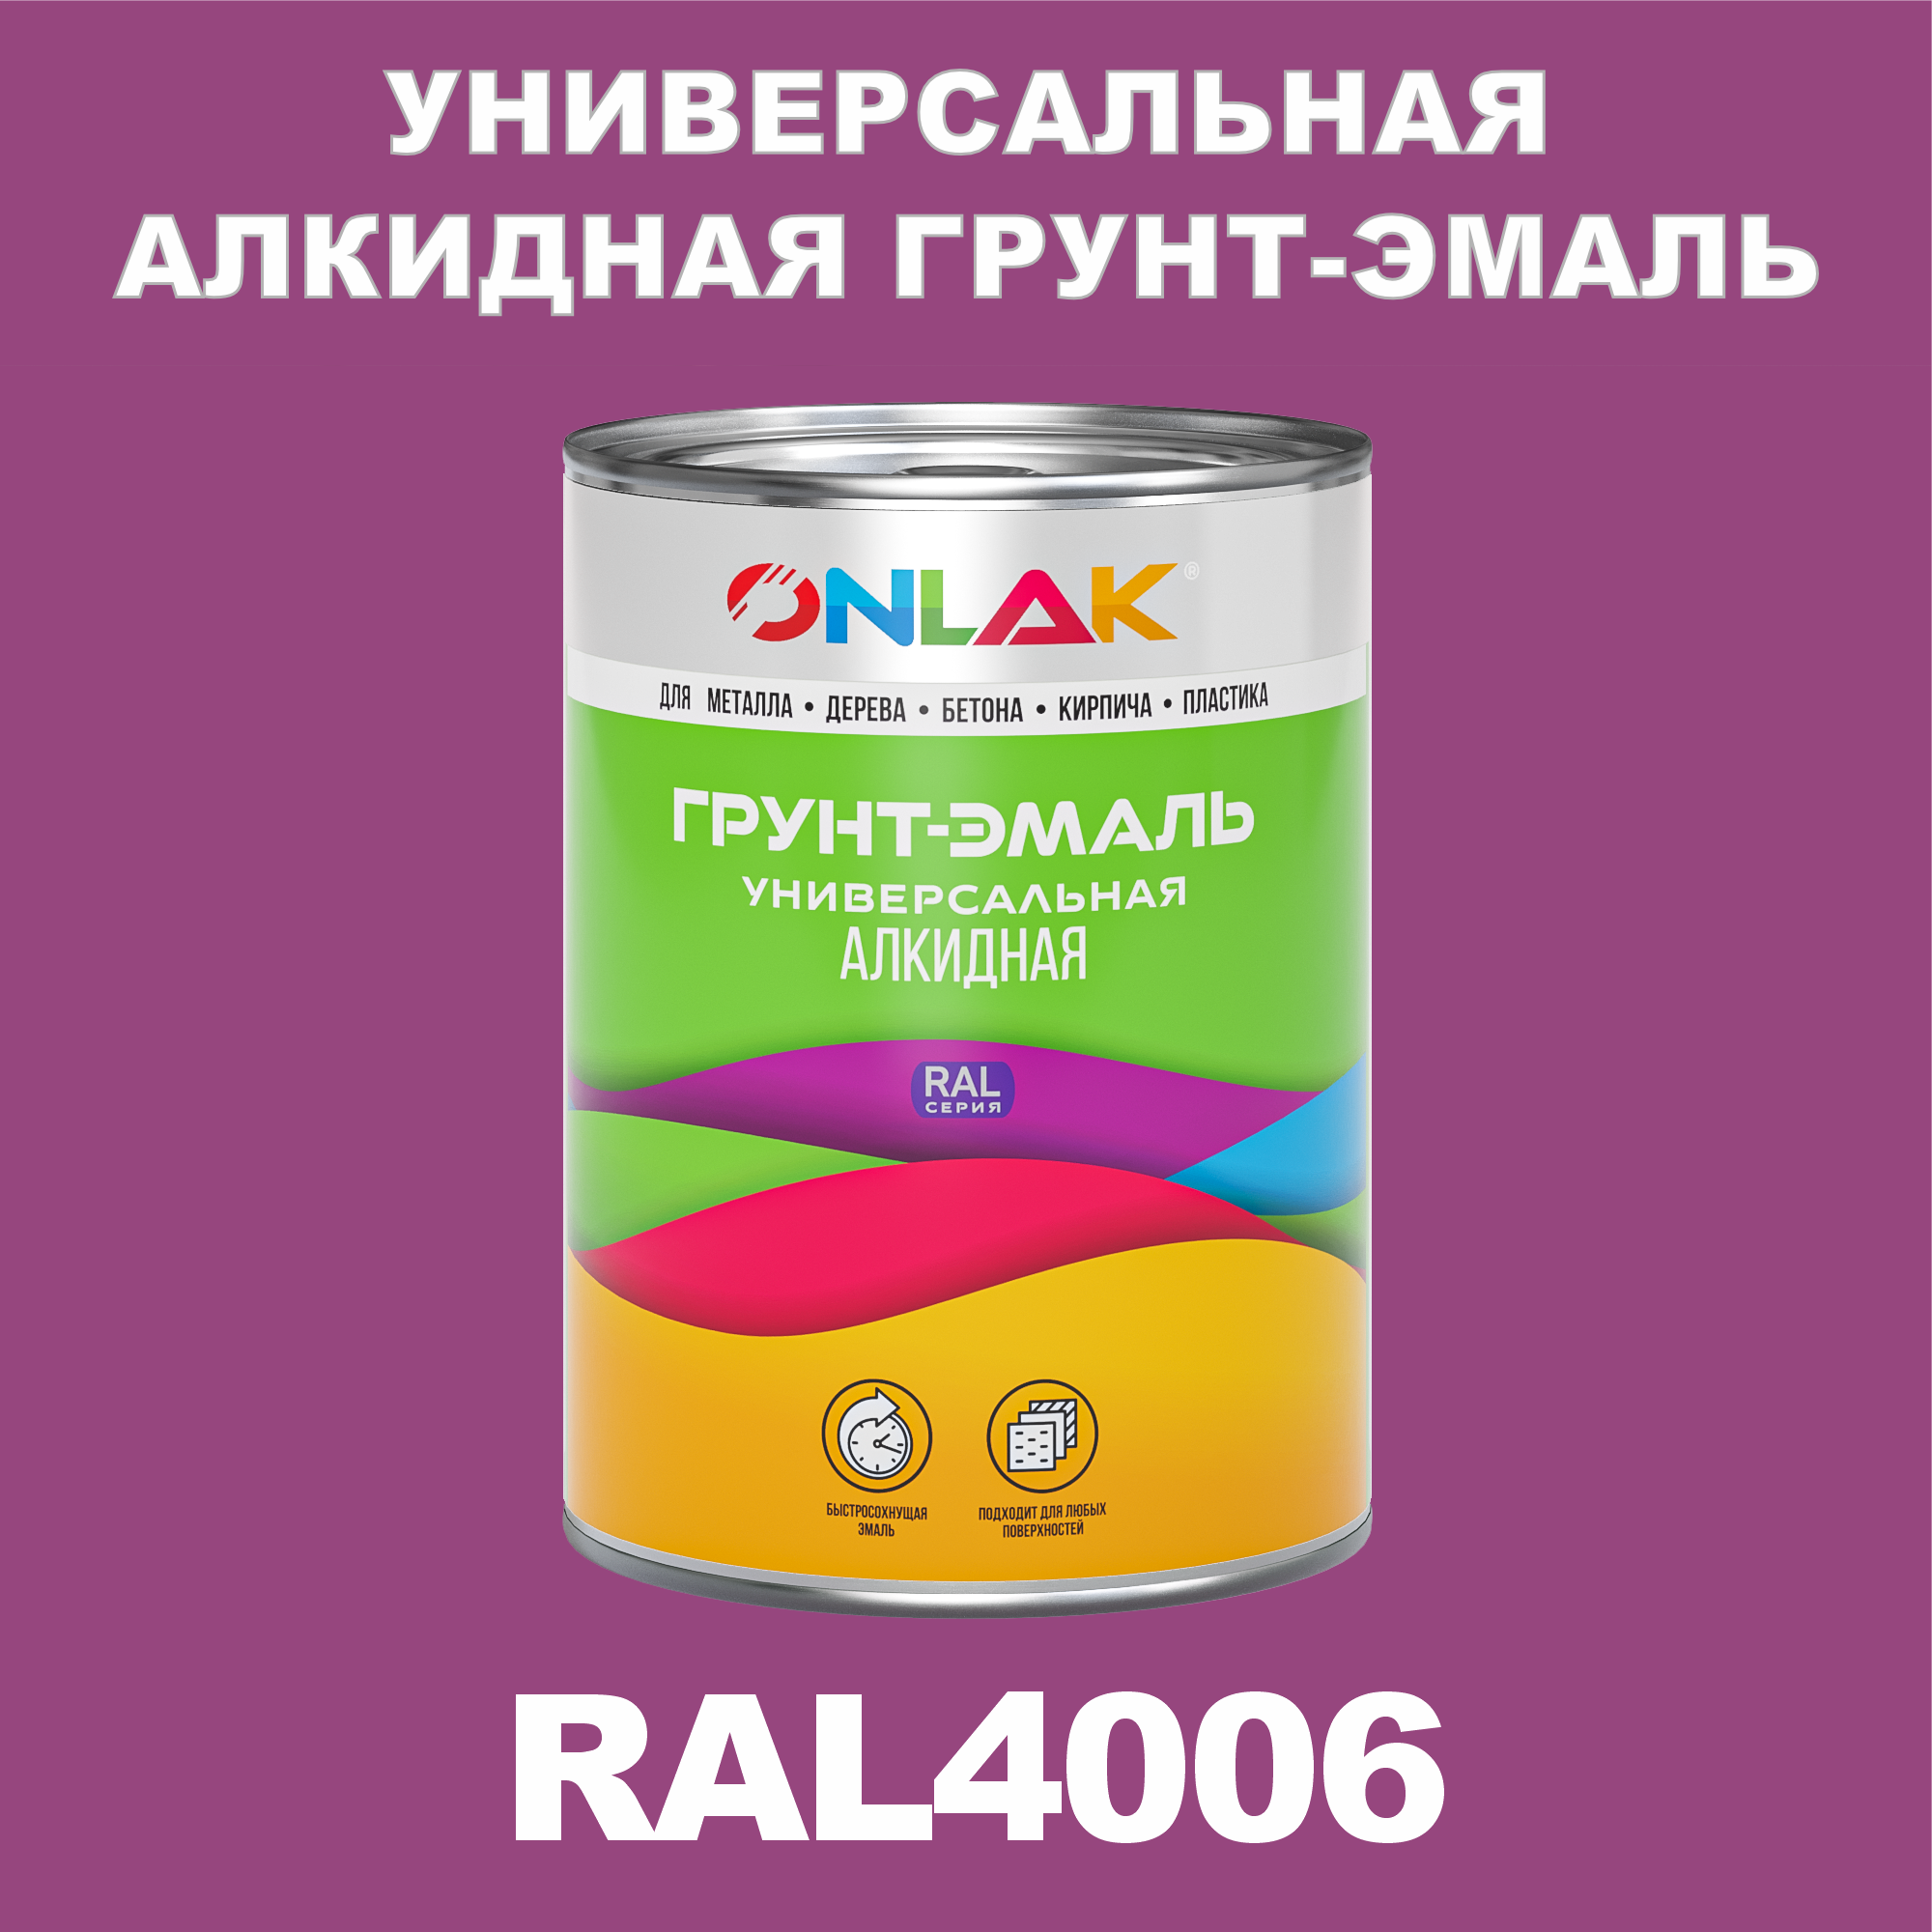 Грунт-эмаль ONLAK 1К RAL4006 антикоррозионная алкидная по металлу по ржавчине 1 кг антикоррозионная грунт эмаль onlak ral 4012 фиолетовый 715 мл